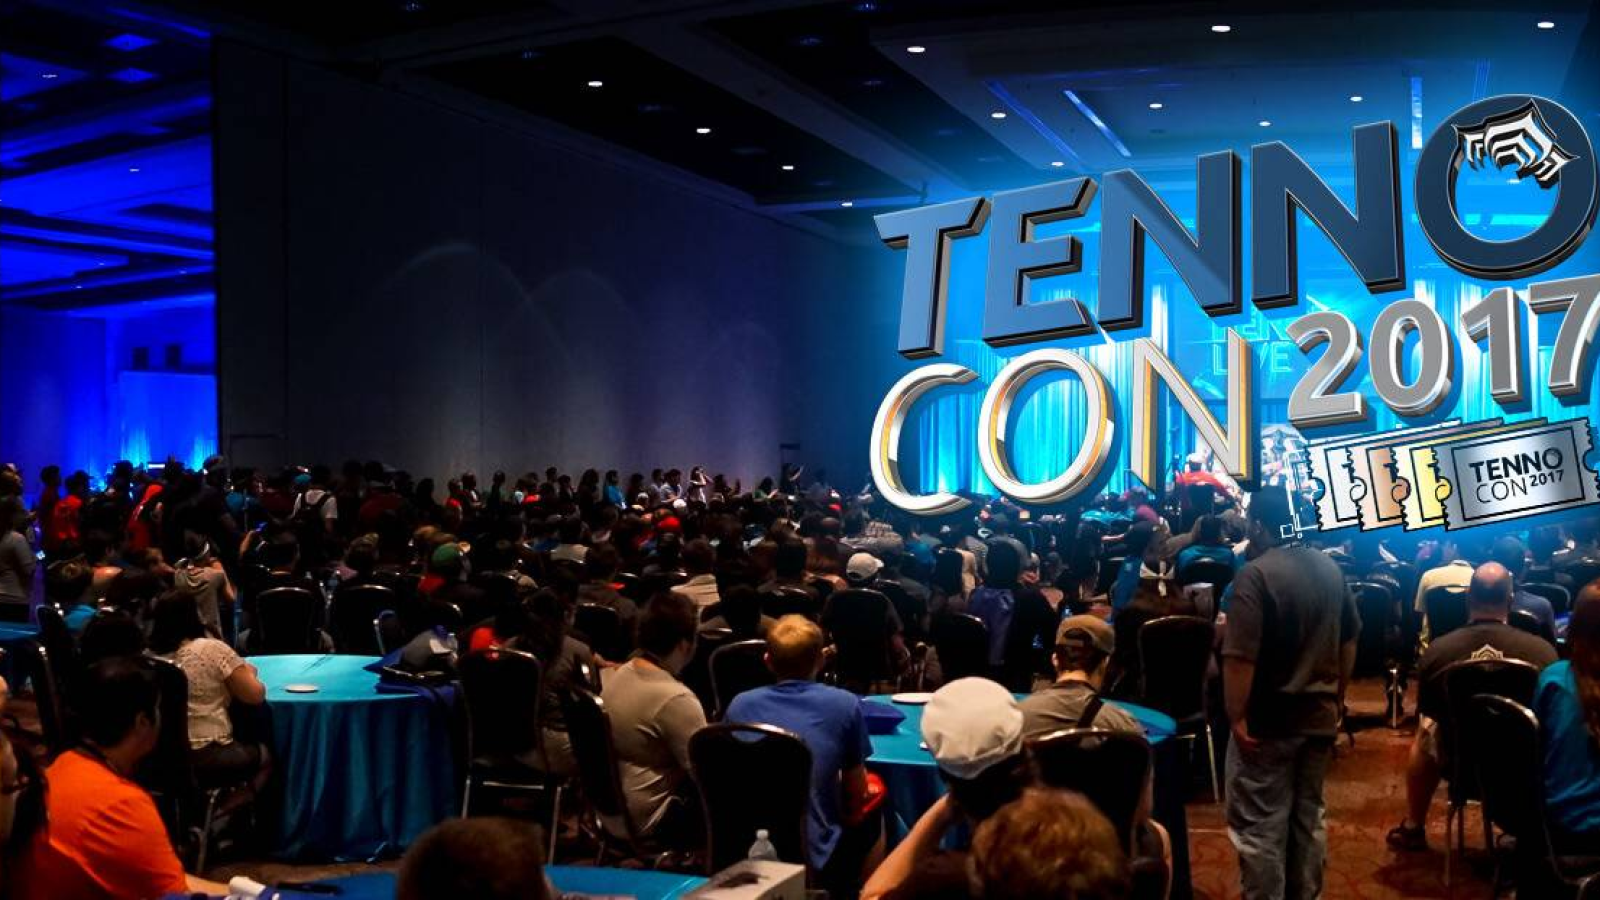 TennoCon 2017